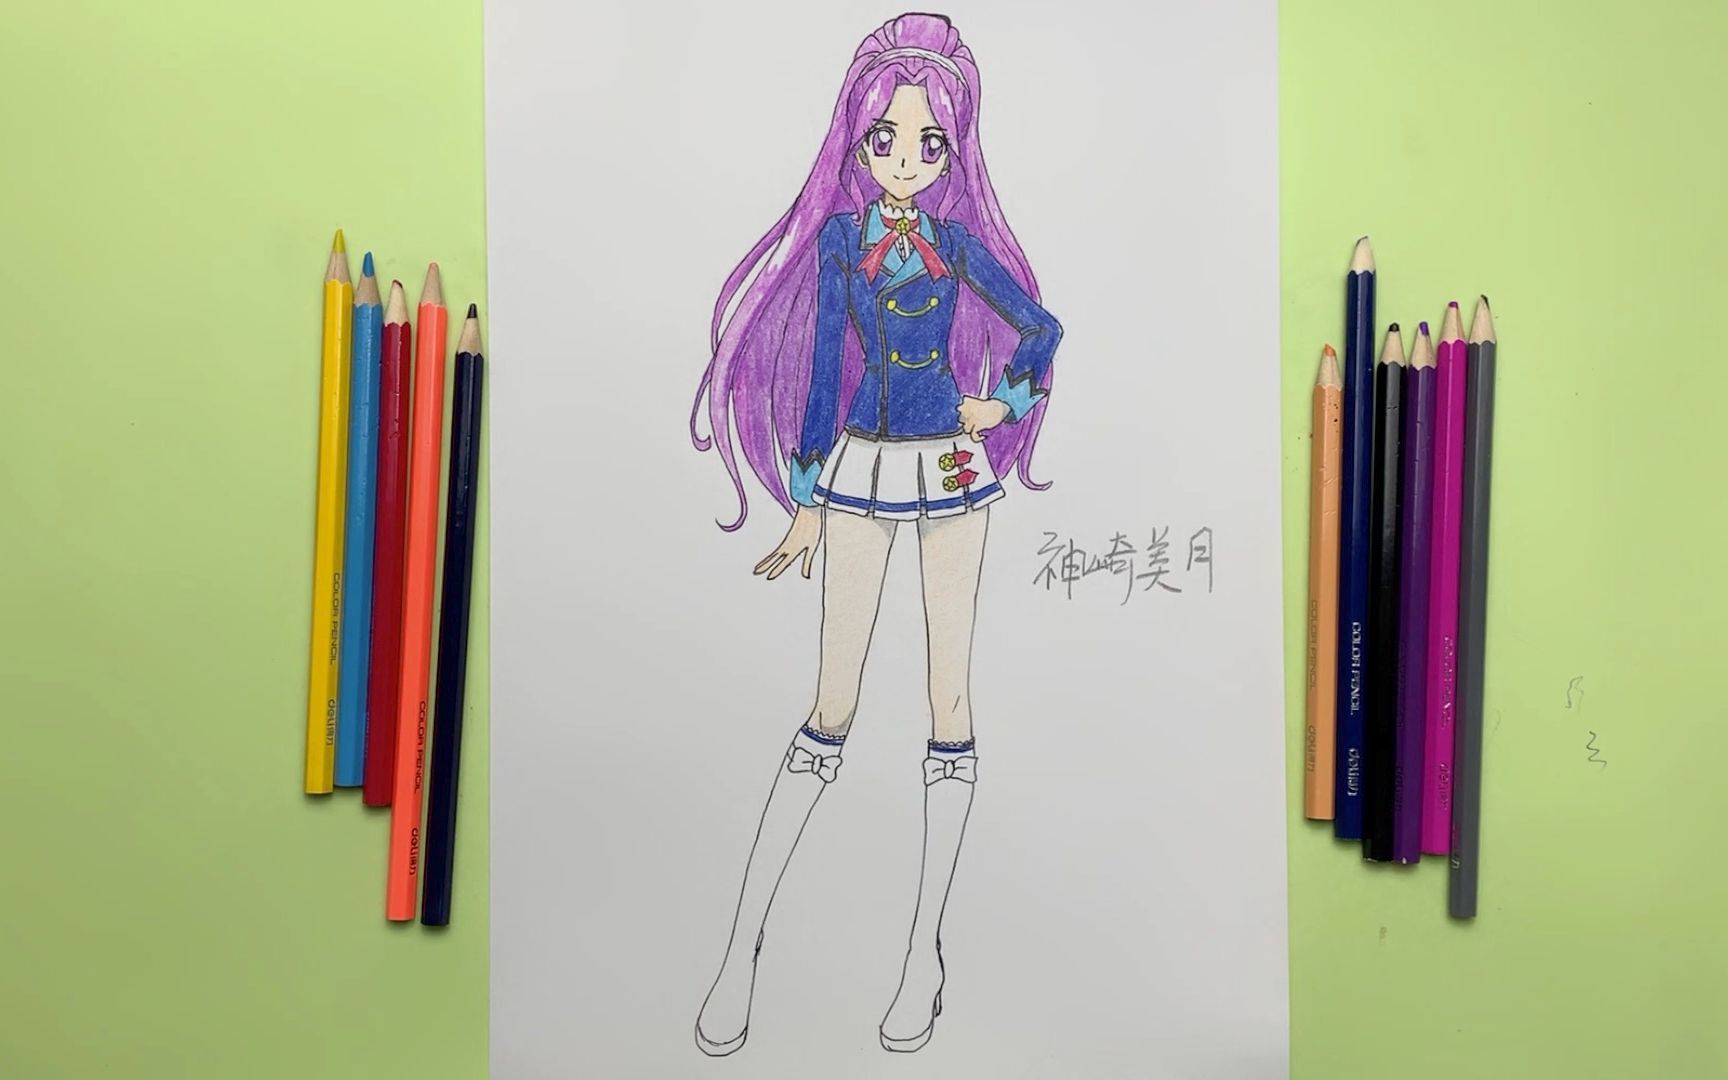 手绘神崎美月校服装全身画偶像活动的紫发当红艺人喜欢吗